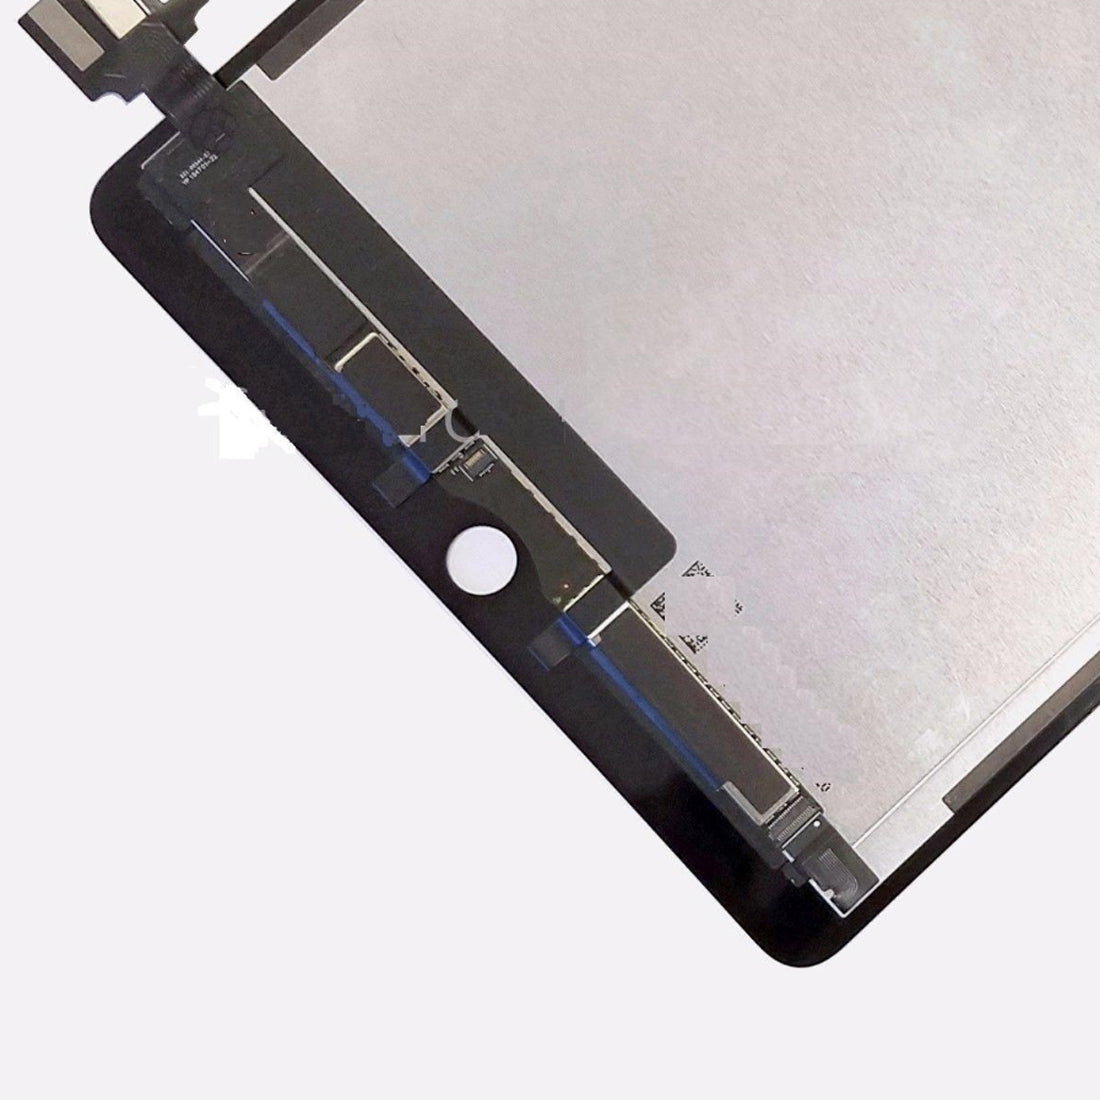 Pantalla LCD + Tactil Digitalizador Apple iPad Pro 9.7 A1673 A1674 A1675 Negro